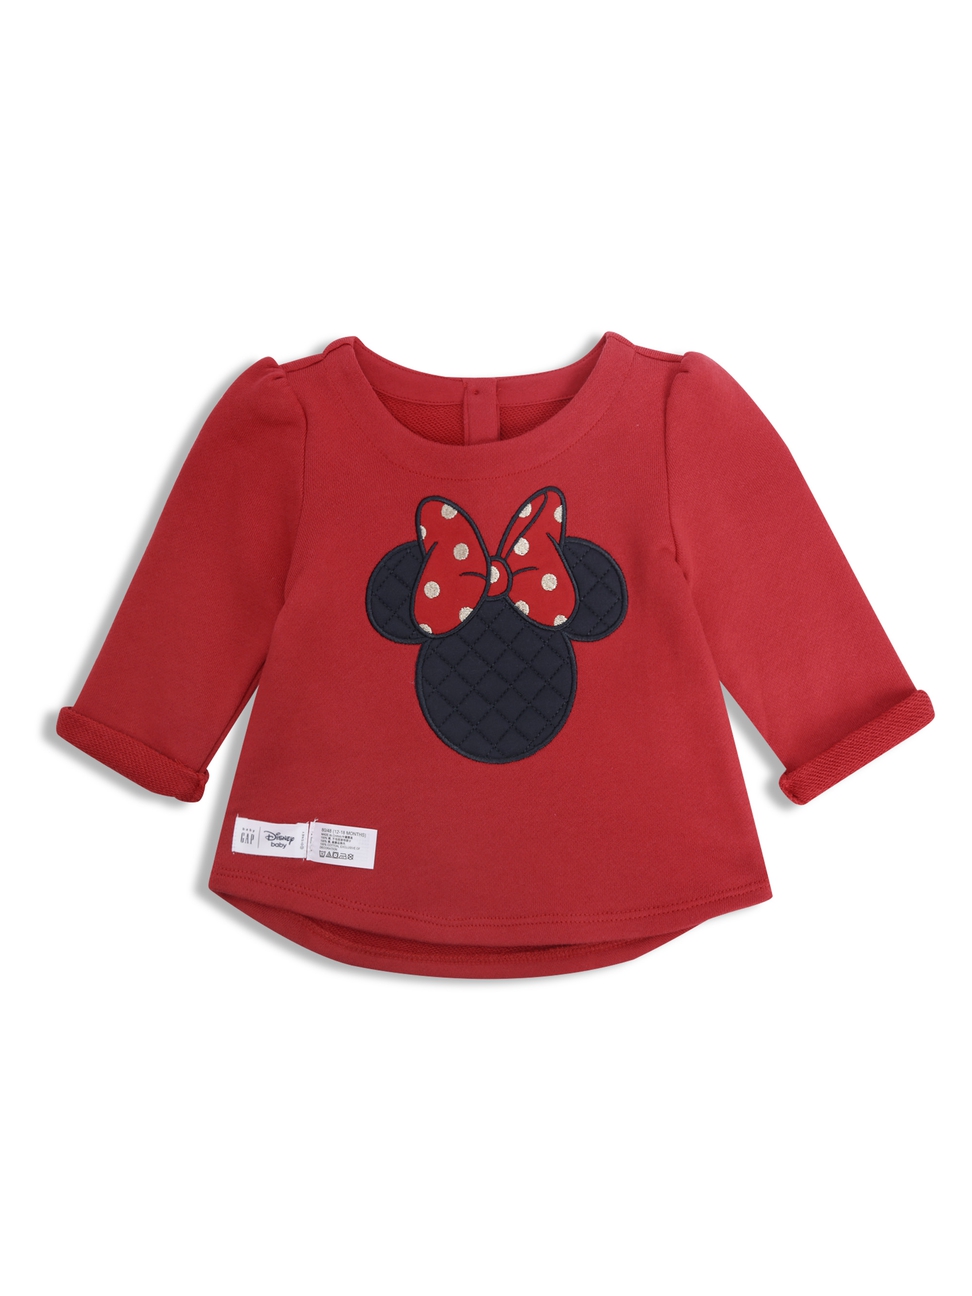 嬰兒裝|Gap x Disney迪士尼聯名 米妮印花上衣-摩登紅色